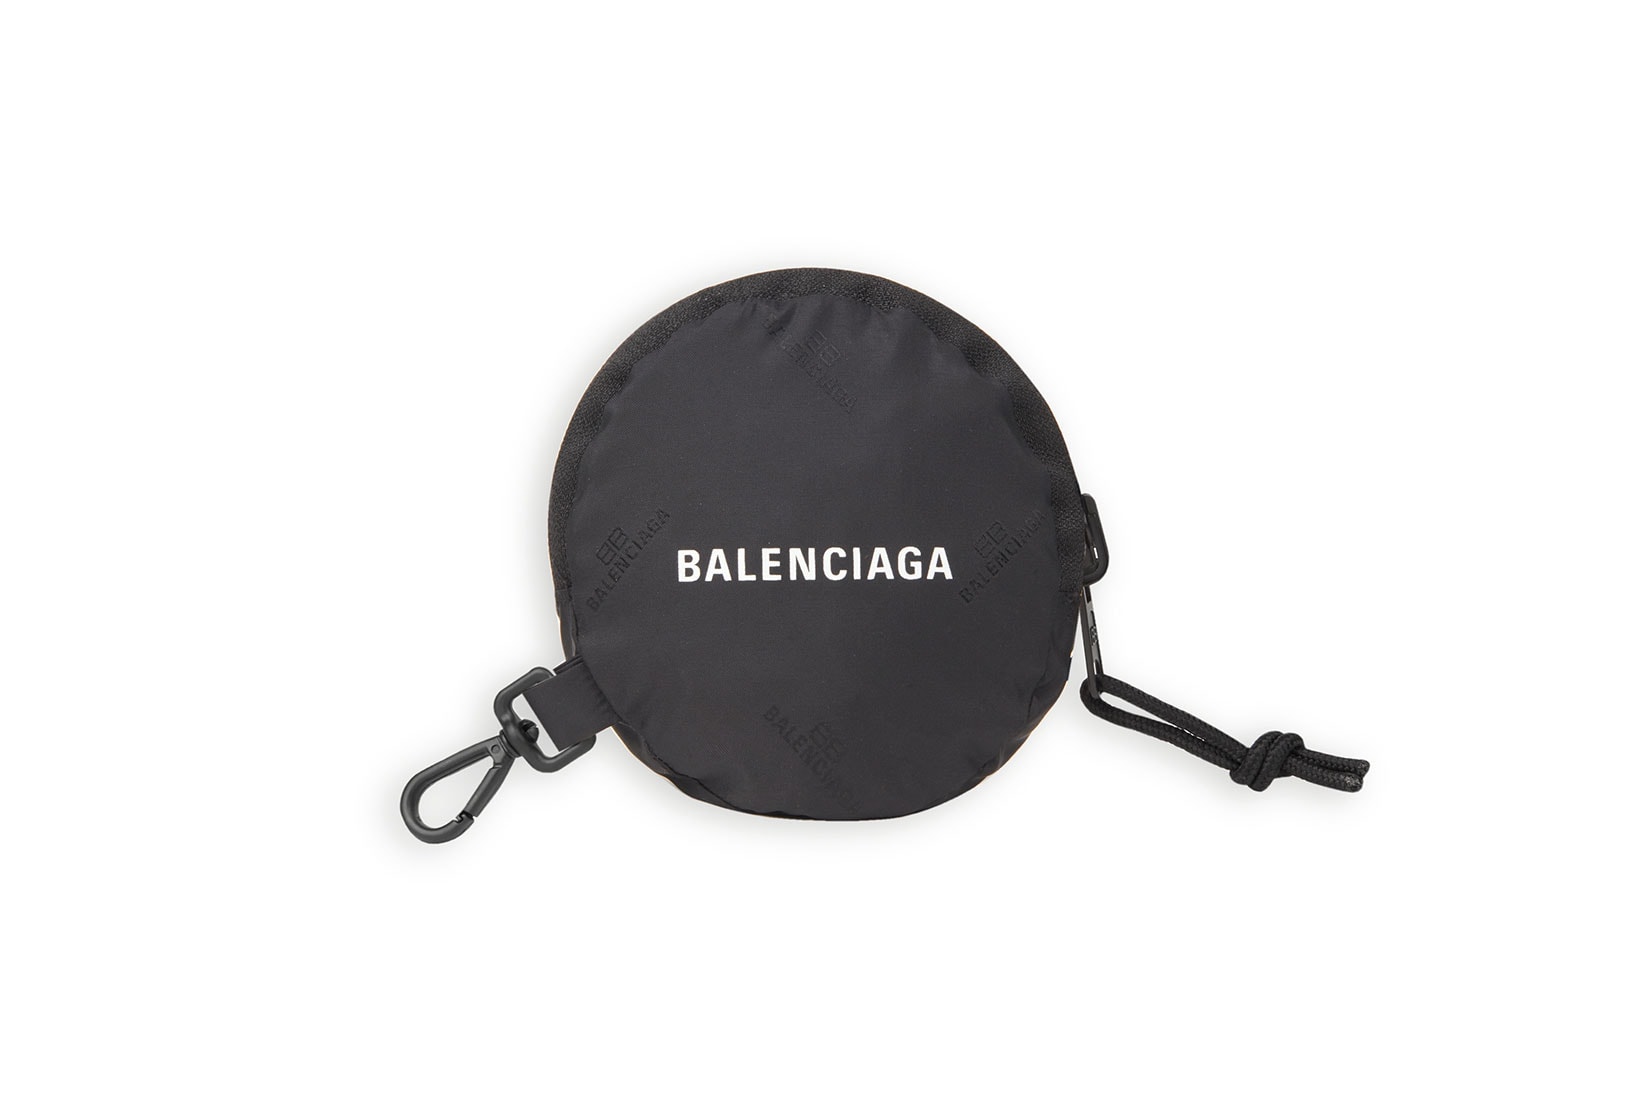 balenciaga logo grocery shopper bags reusable recycled black